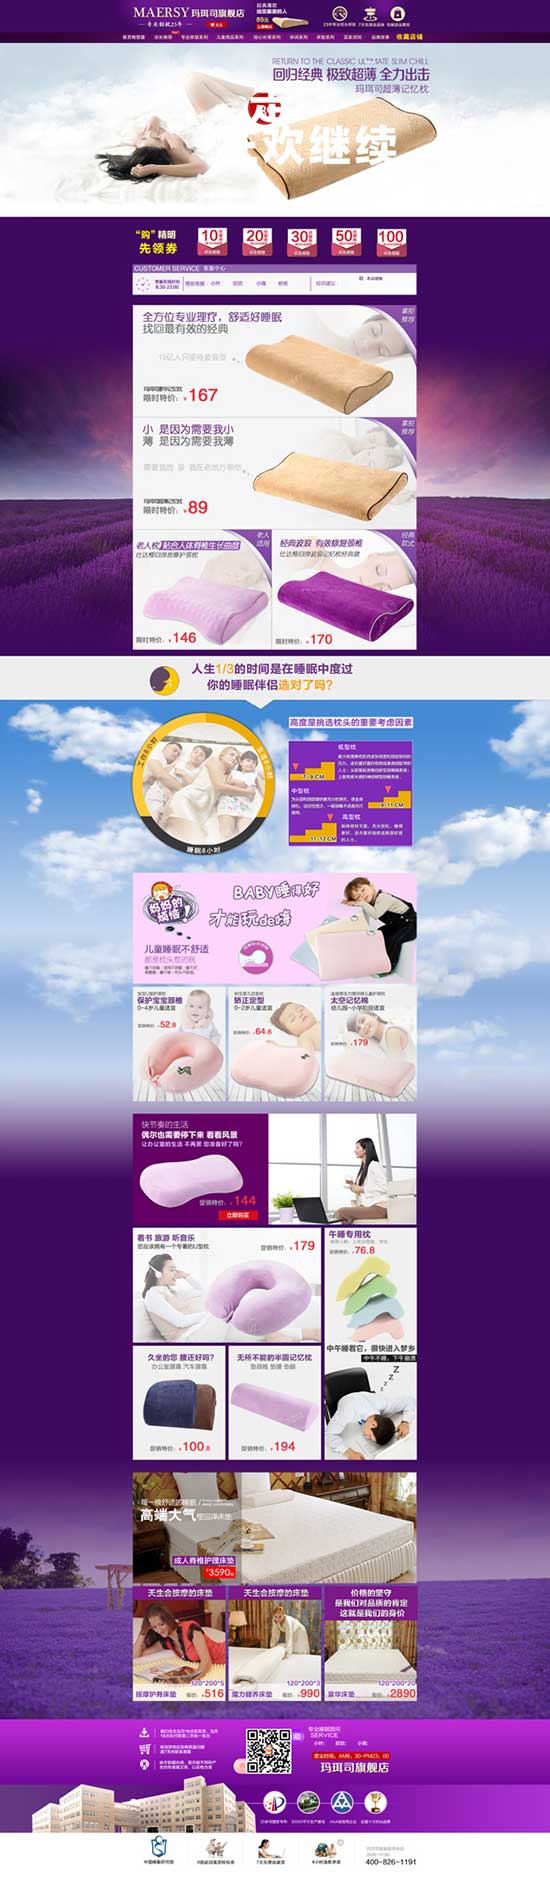 Taobao travesseiro atividade web design psd coisas